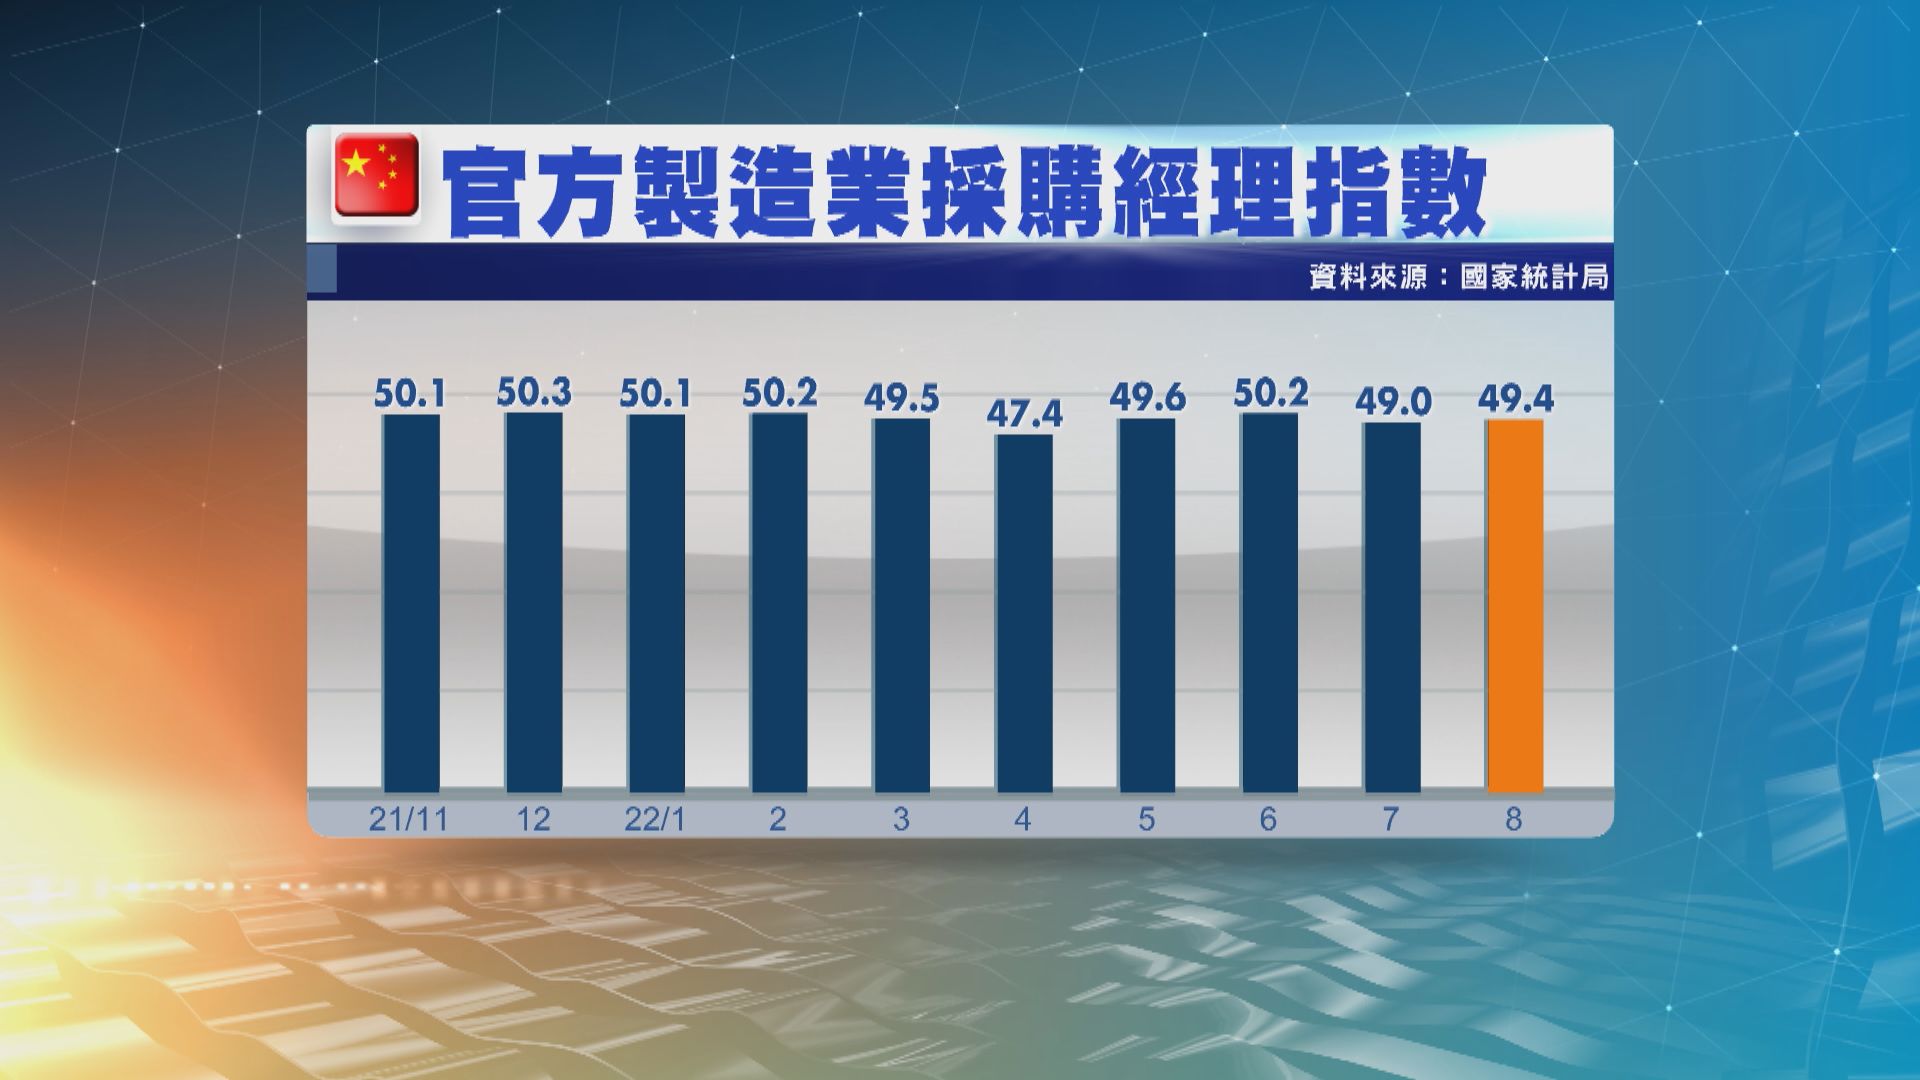 【內地經濟】中國8月官方製造業PMI報49.4 勝預期